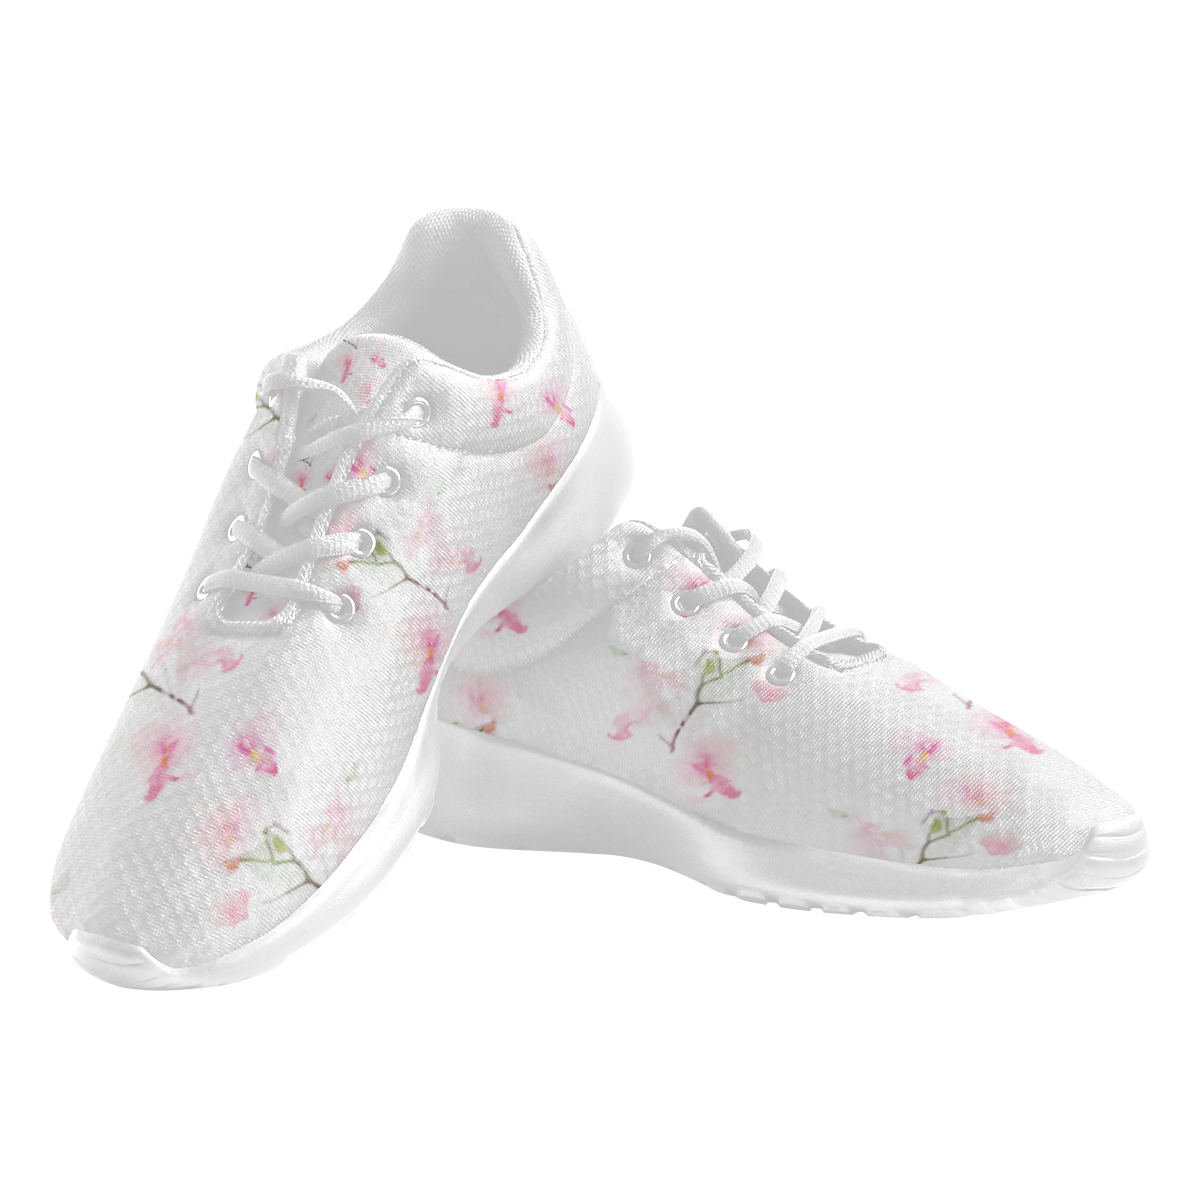 Pattern Orchidées Women's Athletic Shoes (Model 0200)